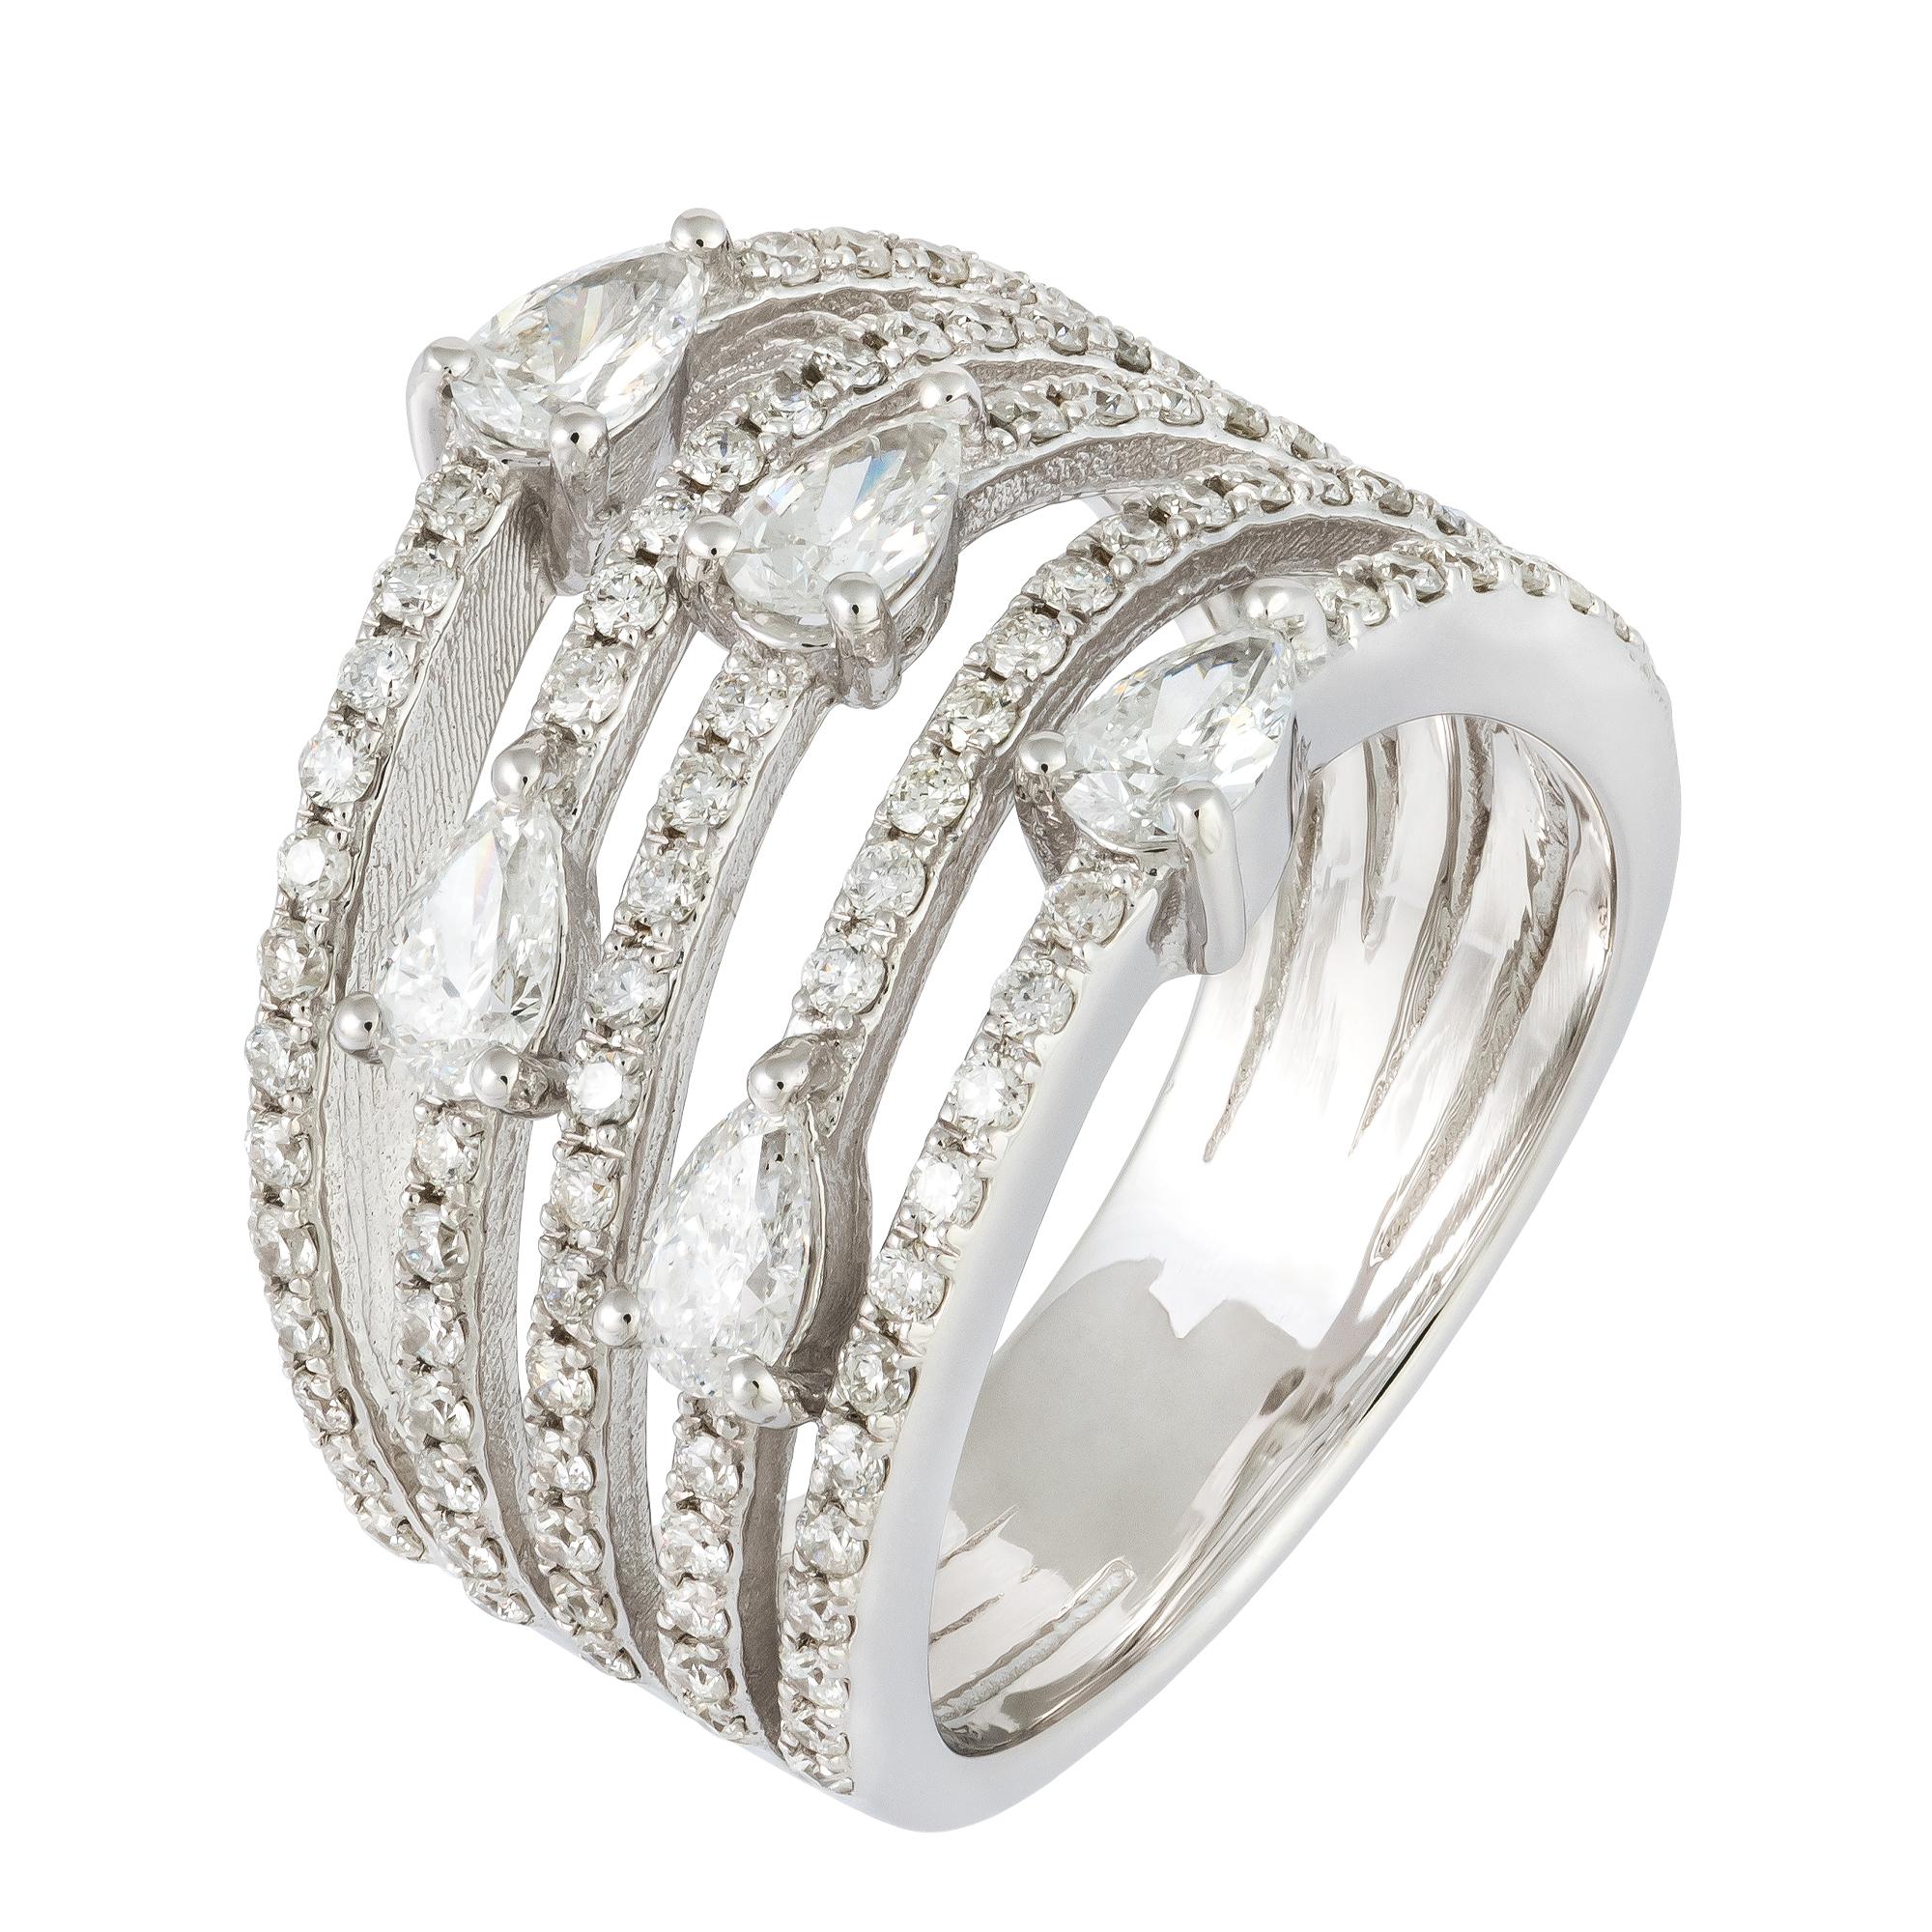 For Sale:  Stunning White 18K Gold White Diamond Ring For Her 2